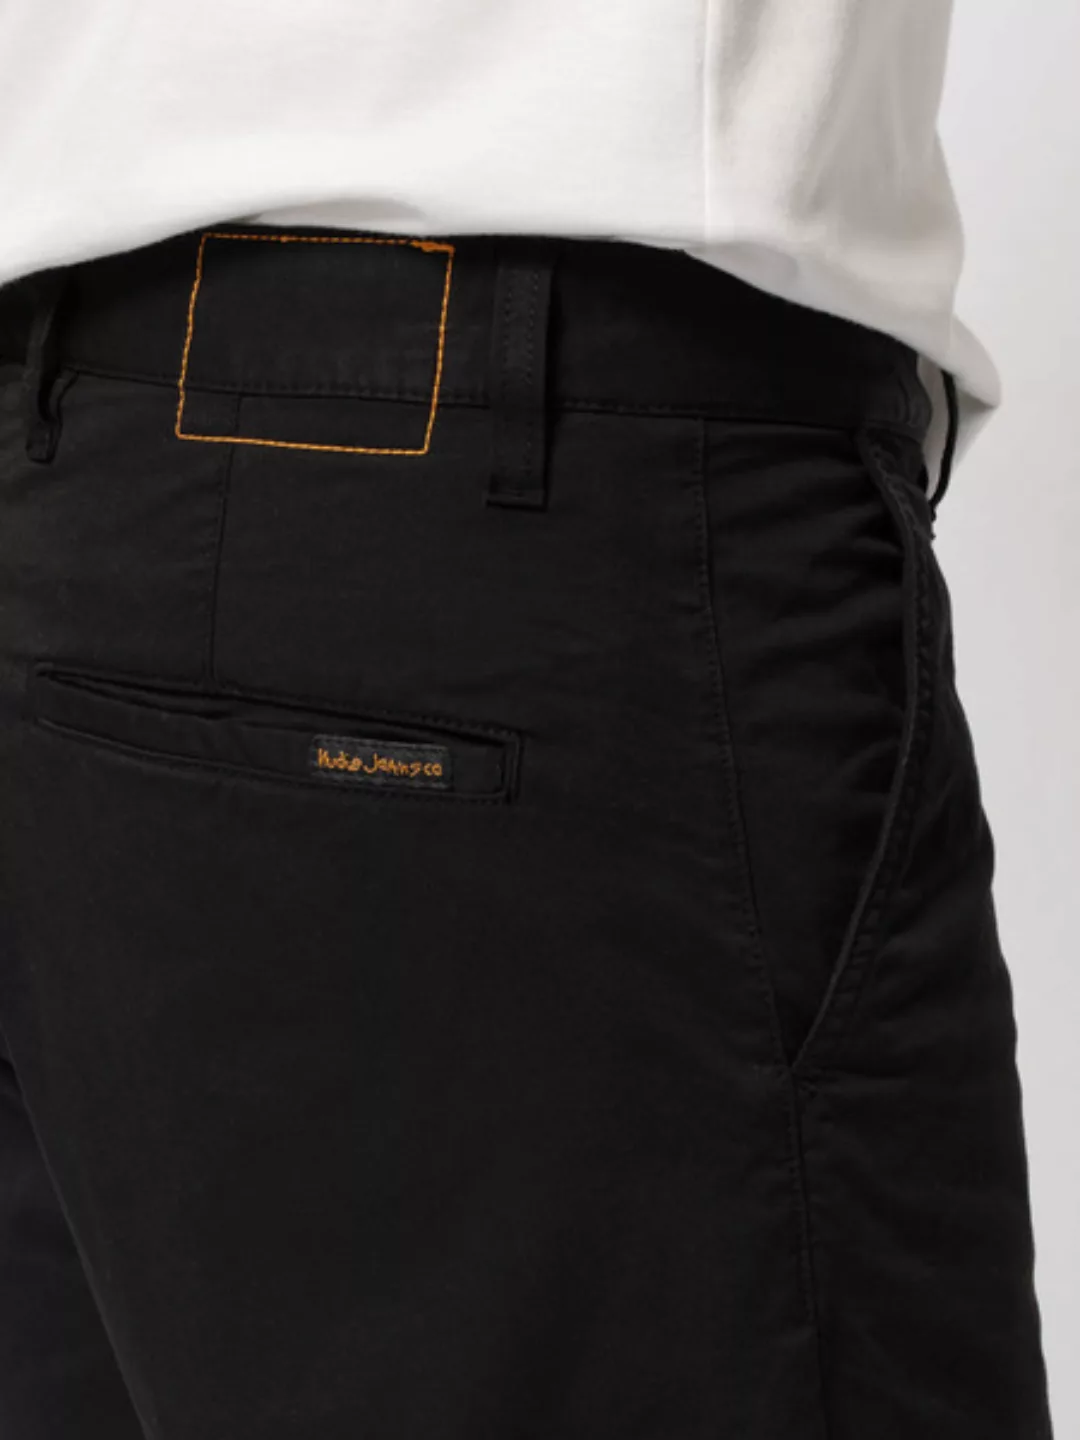 Nudie Jeans - Luke Shorts - Twill günstig online kaufen